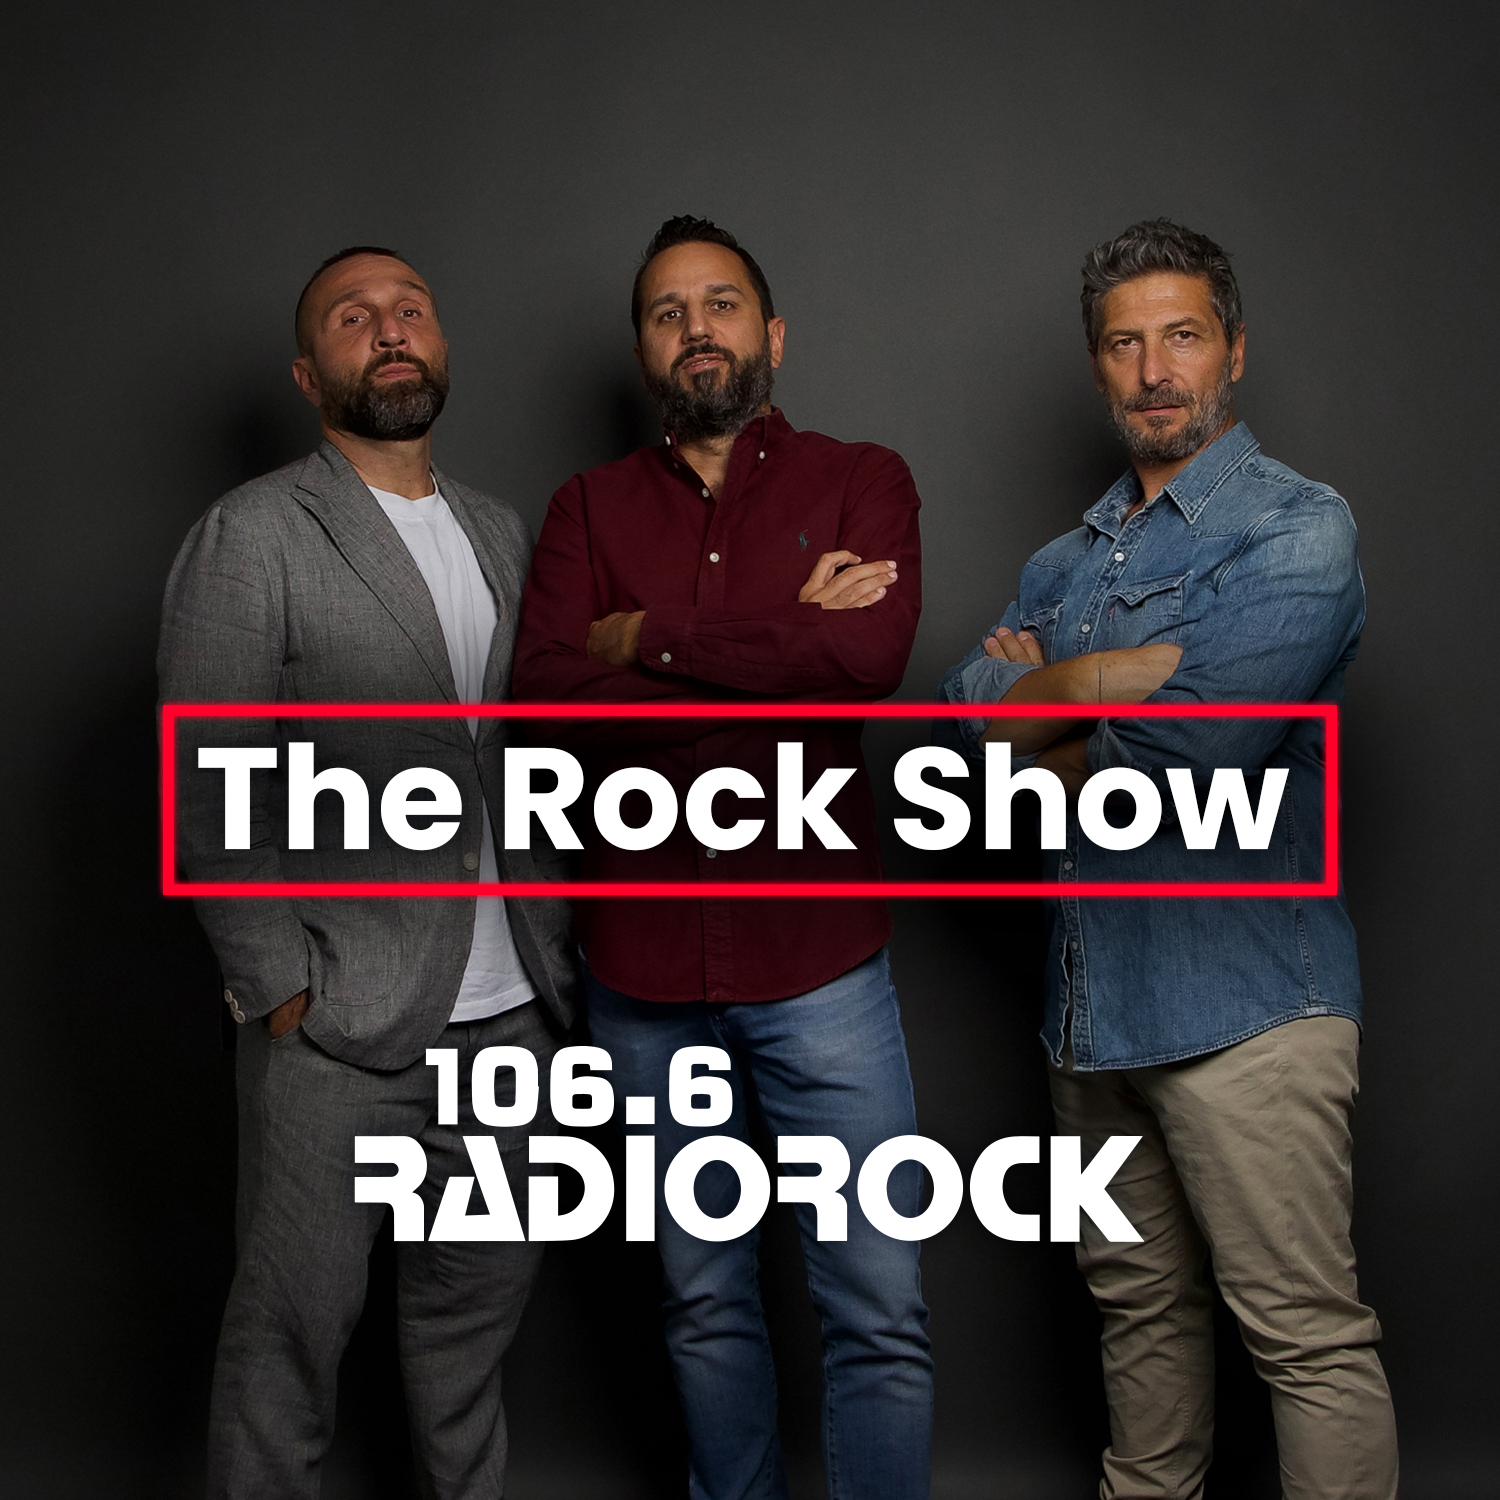 The Rock Show - S07E033: I nani in via del Corso (19-10-23)